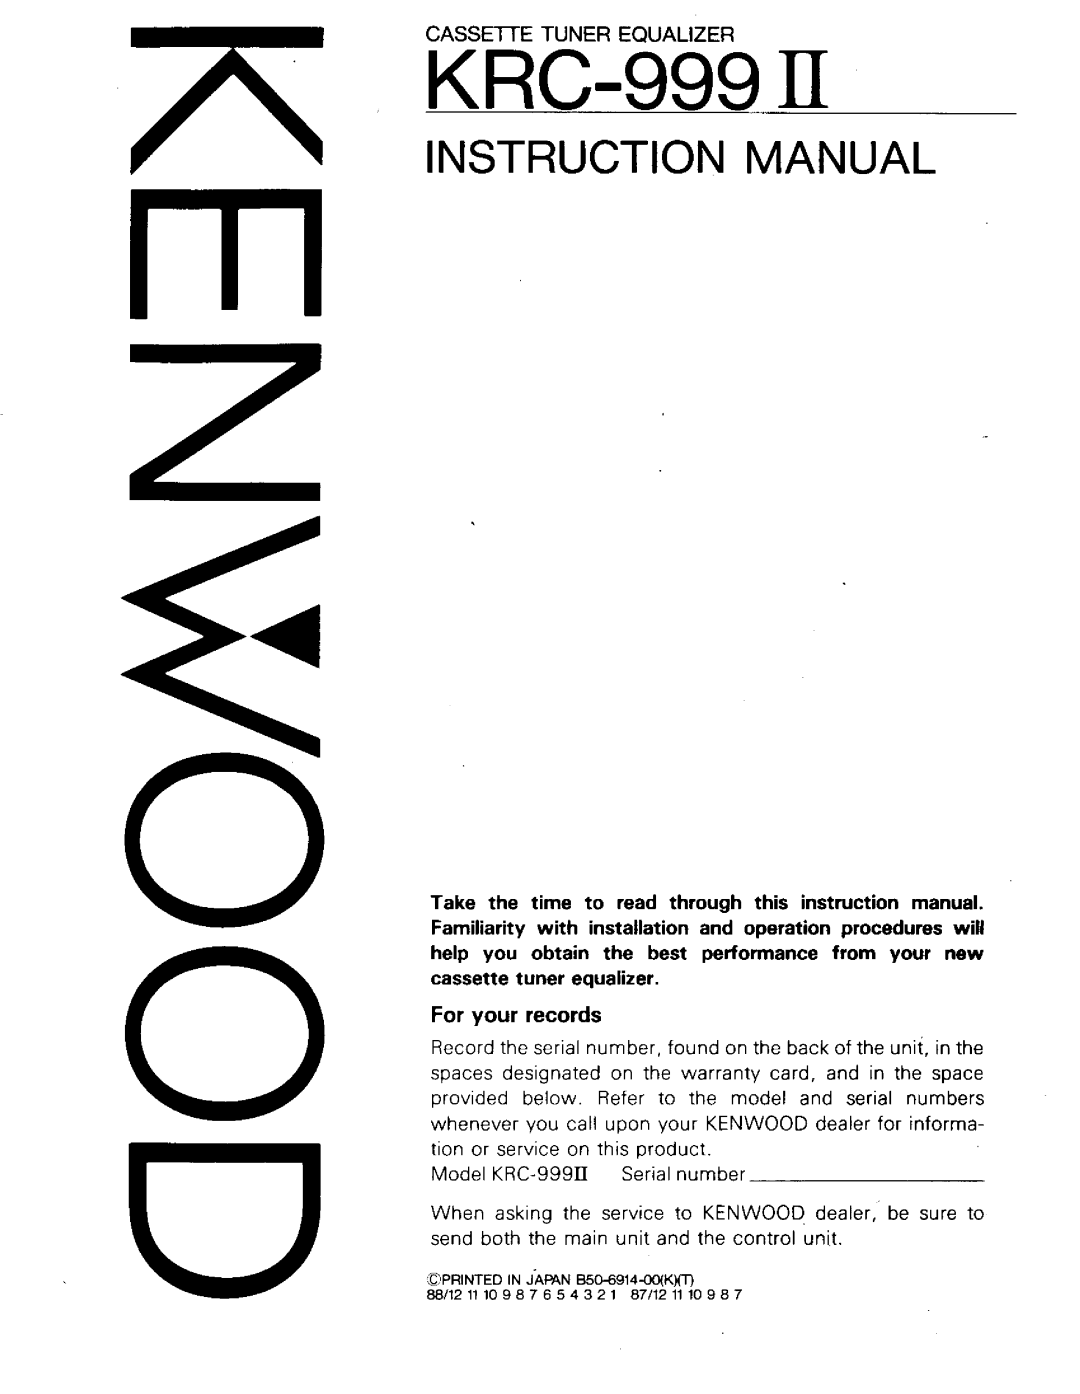 Kenwood KRC-999II manual 